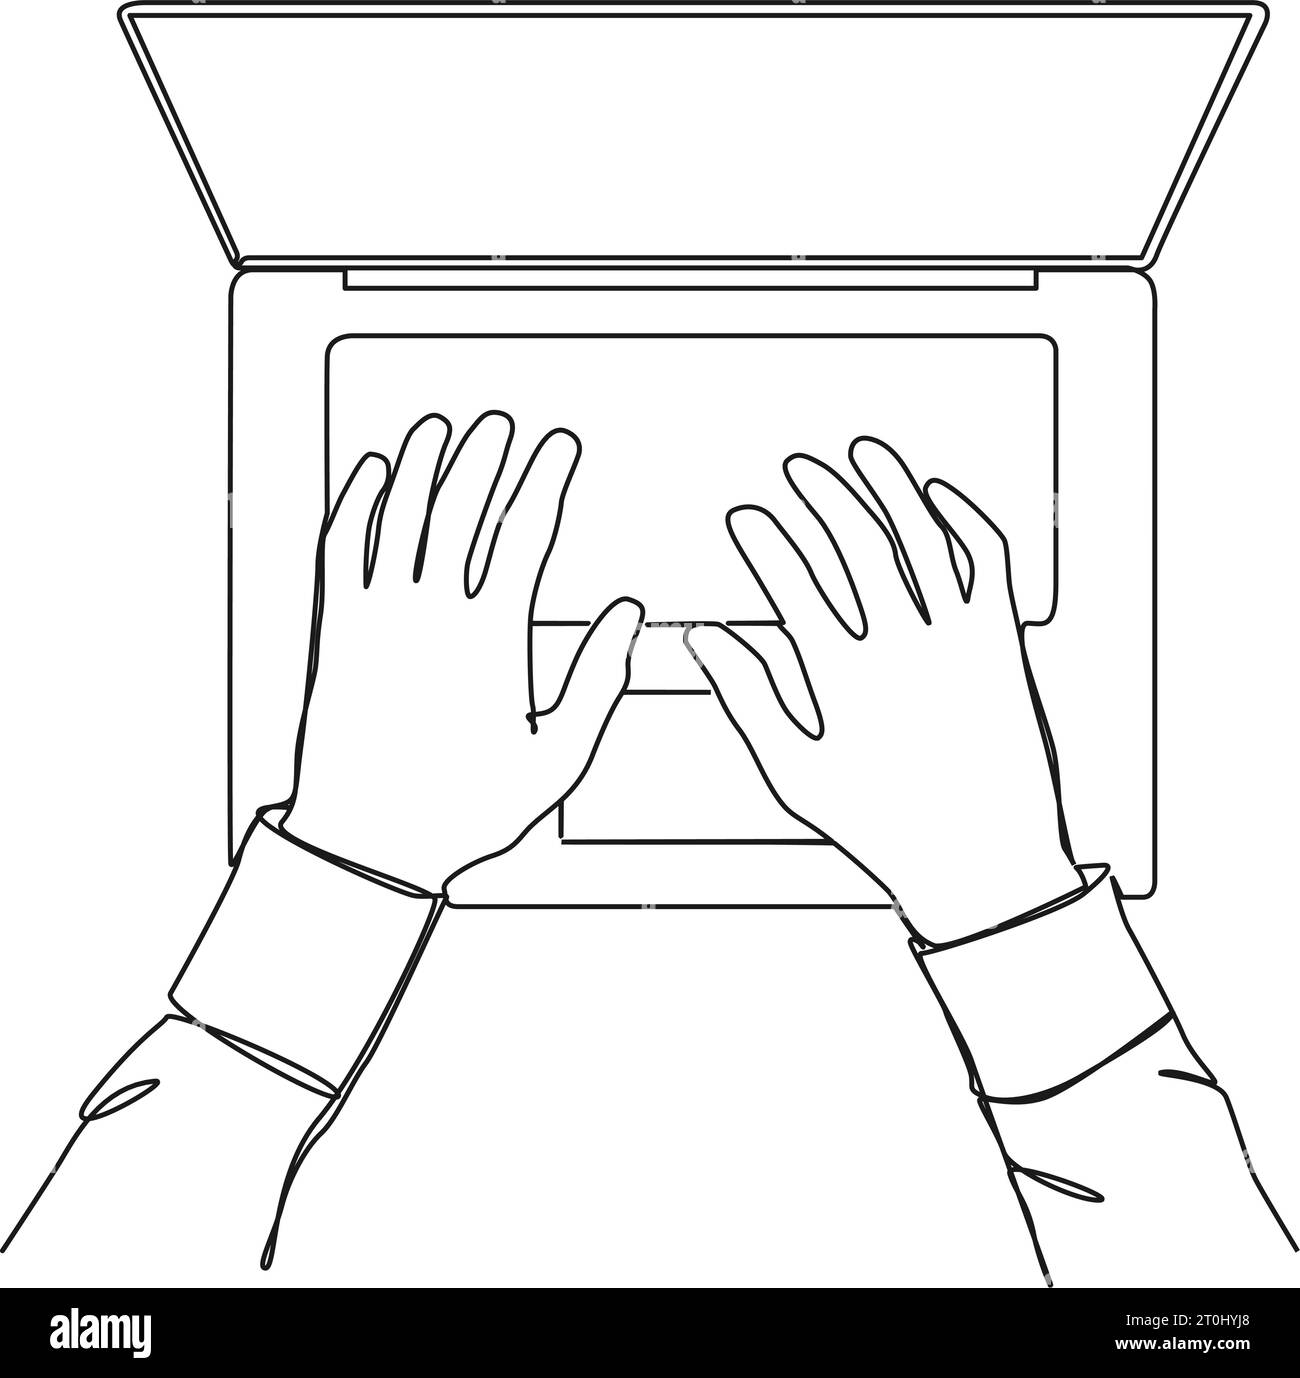 disegno continuo a riga singola di mani digitate sulla tastiera di un computer portatile, illustrazione vettoriale line art Illustrazione Vettoriale